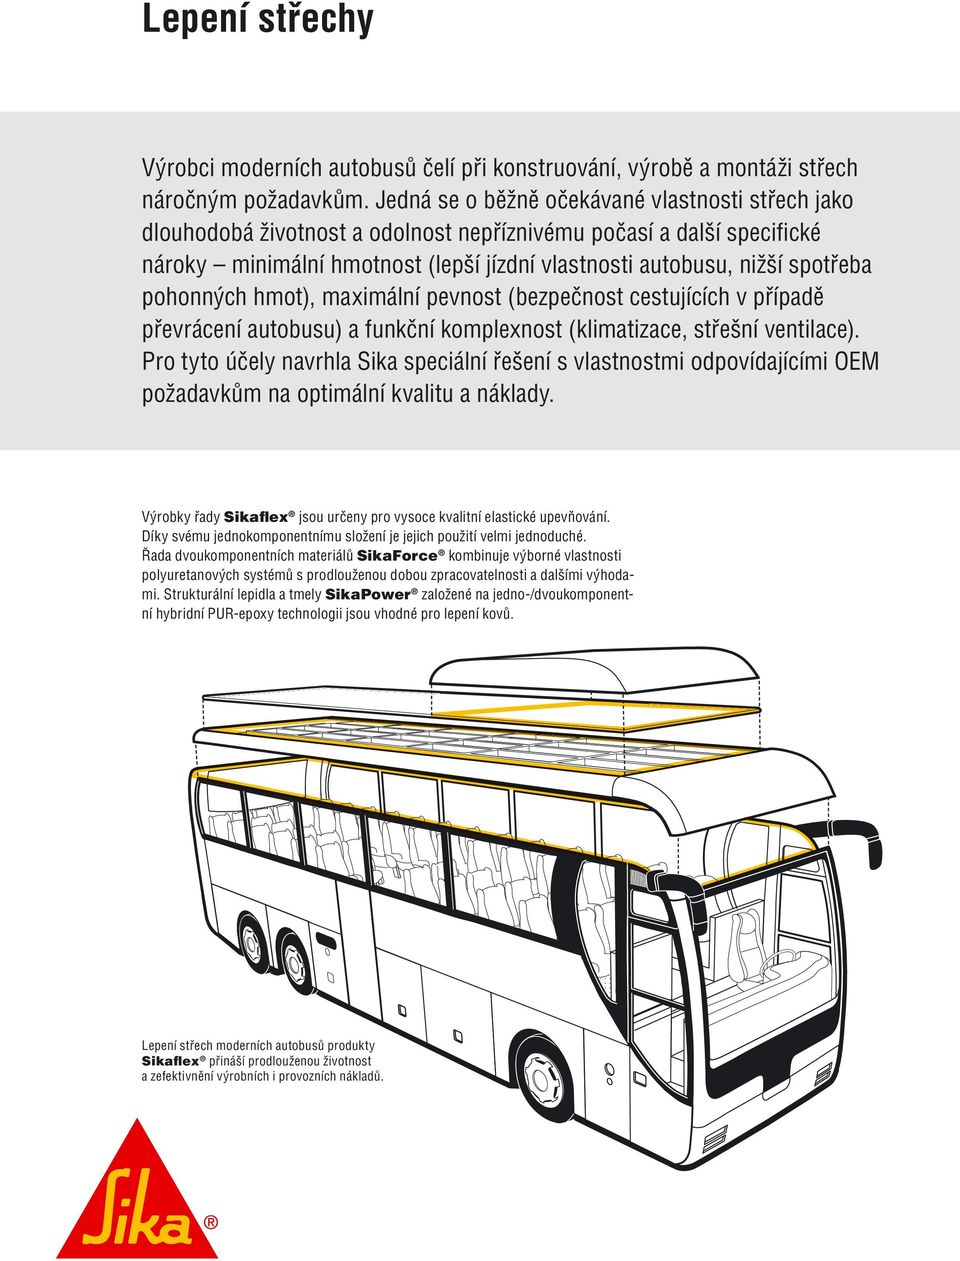 pohonných hmot), maximální pevnost (bezpečnost cestujících v případě převrácení autobusu) a funkční komplexnost (klimatizace, střešní ventilace).